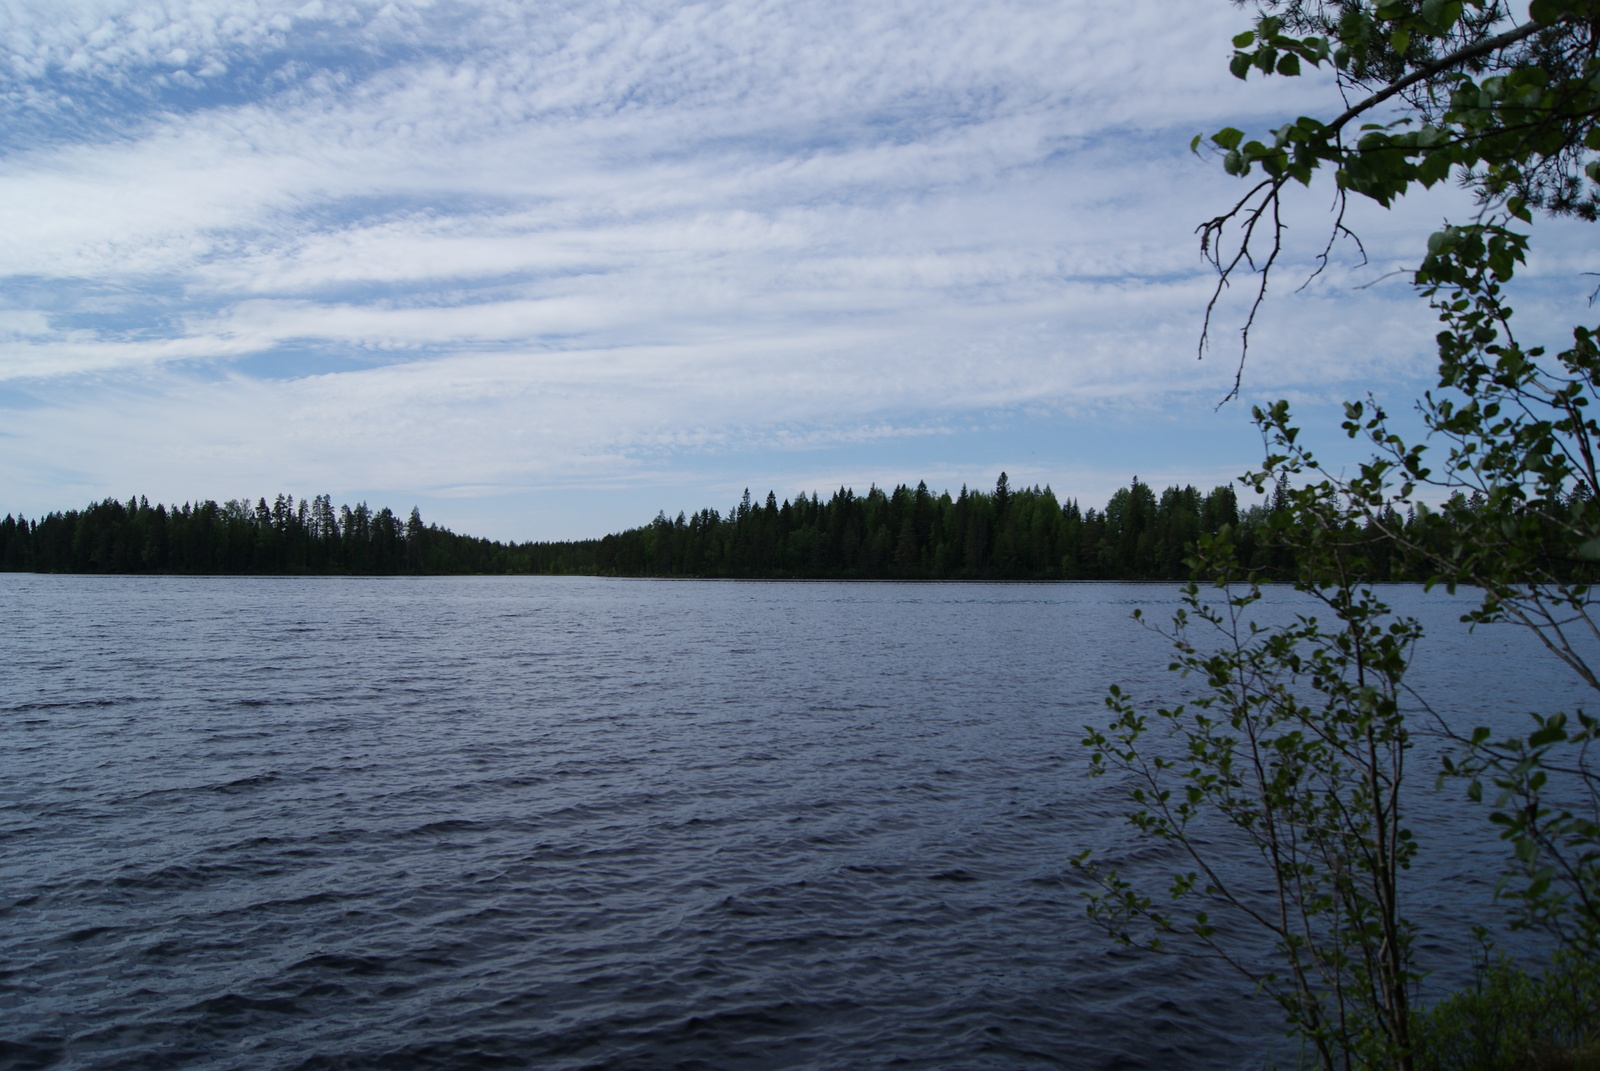 Oikealla lehtipuiden oksat kurkottavat kohti kesäistä järvimaisemaa. Taivaalla on harsopilviä.